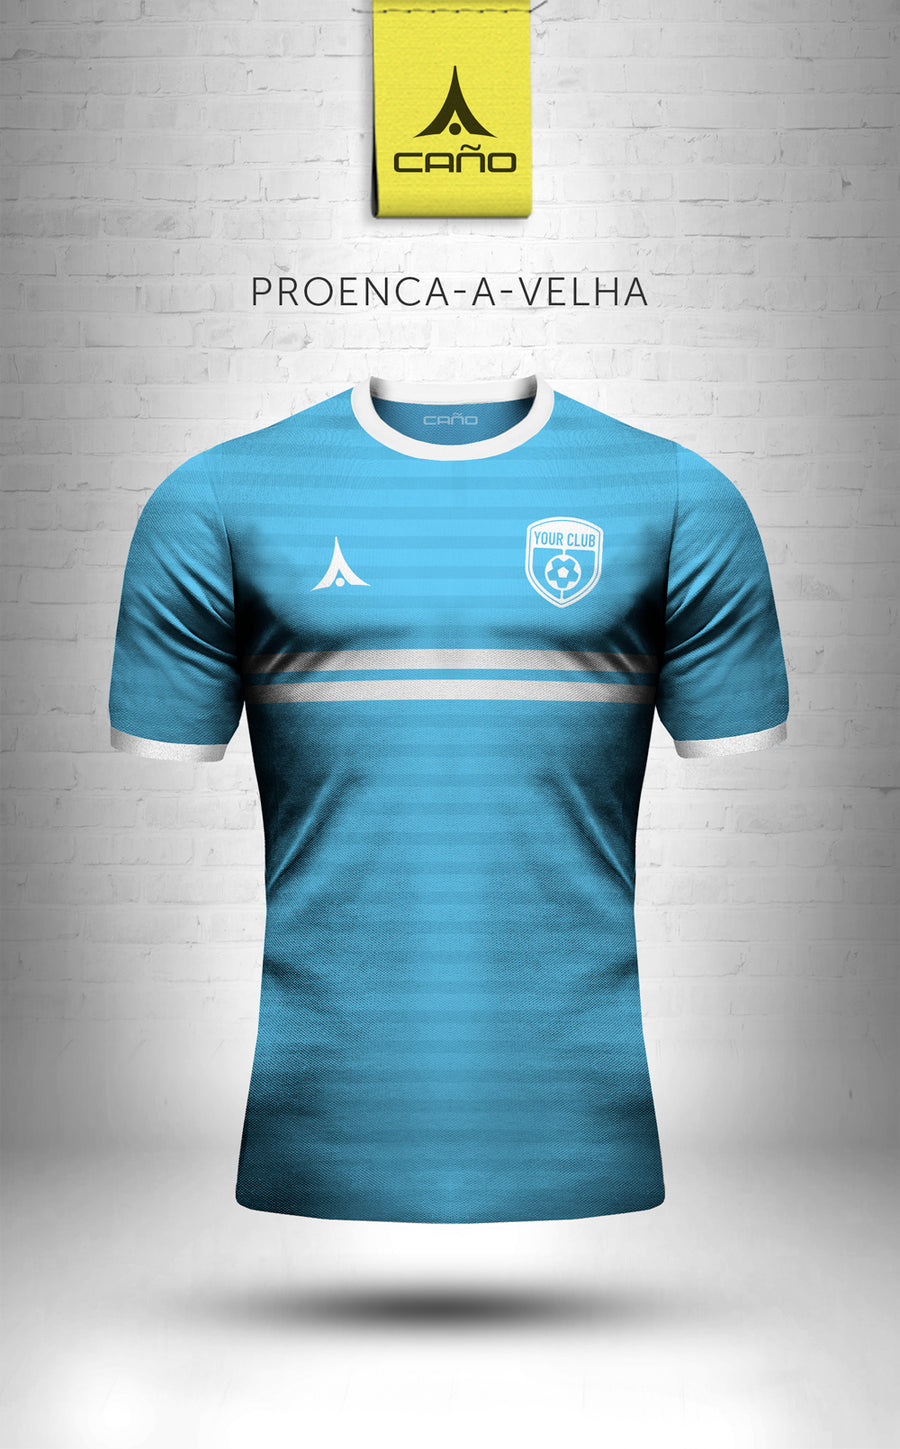 Proenca-a-Velha in light blue/white